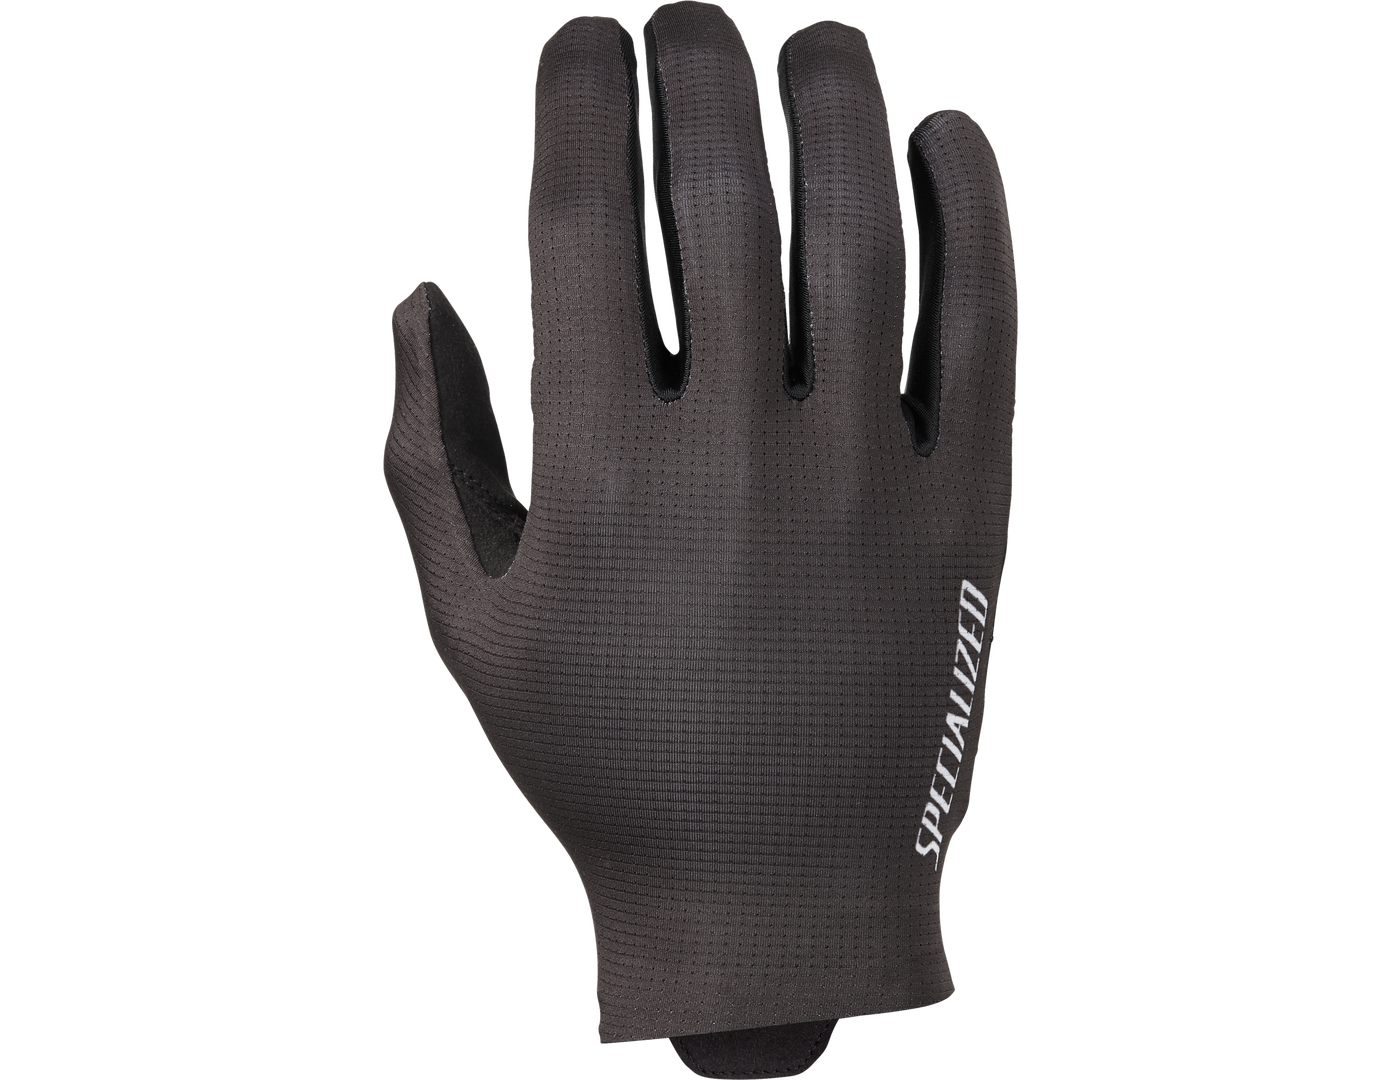 SL Pro Glove Long Finger